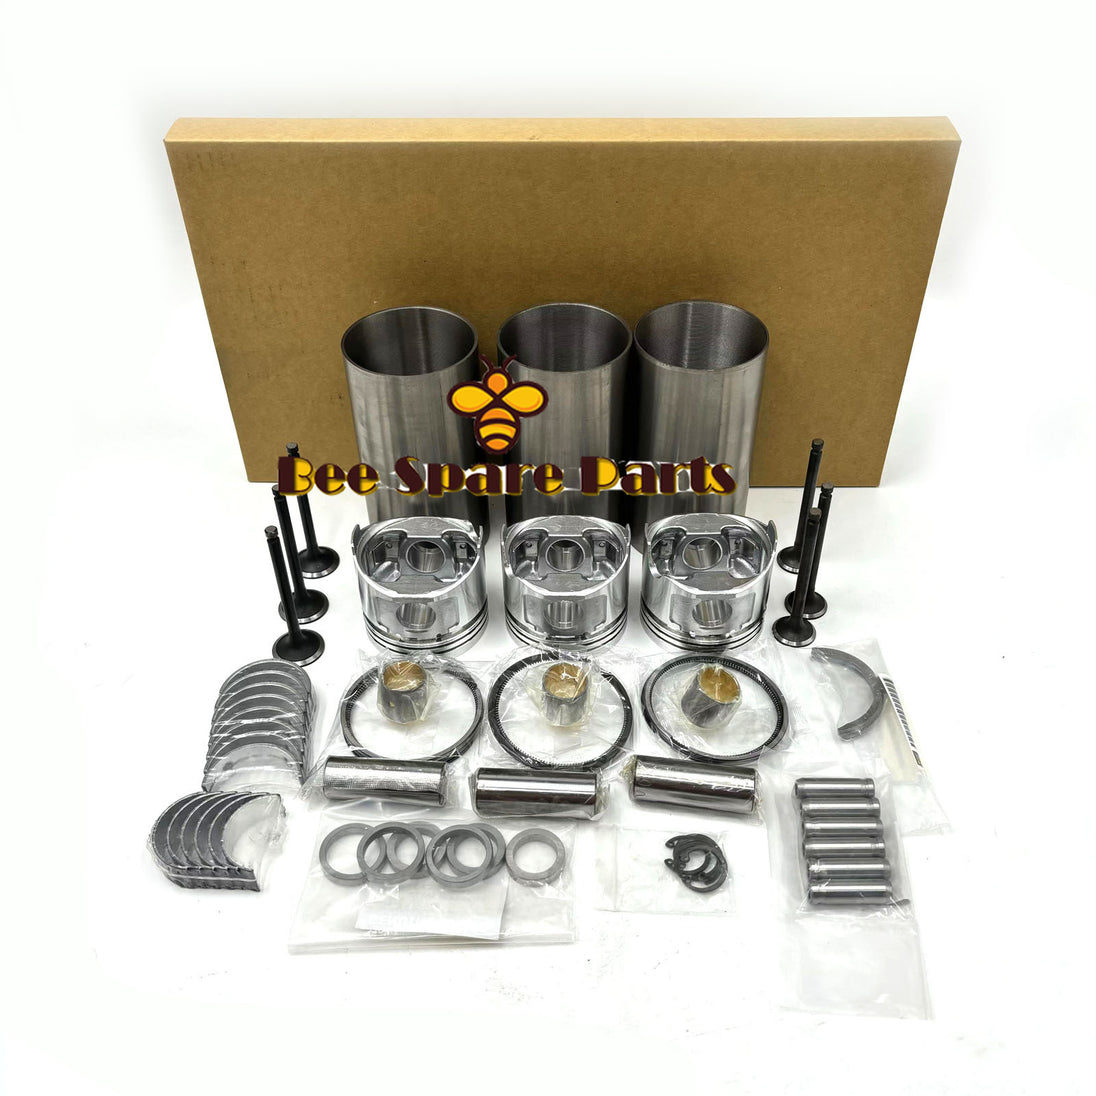 3AE1 Overhaul Kit With Piston Rings Bearings Piston Rings Full Gasket Set Valve Liner Kit For Isuzu